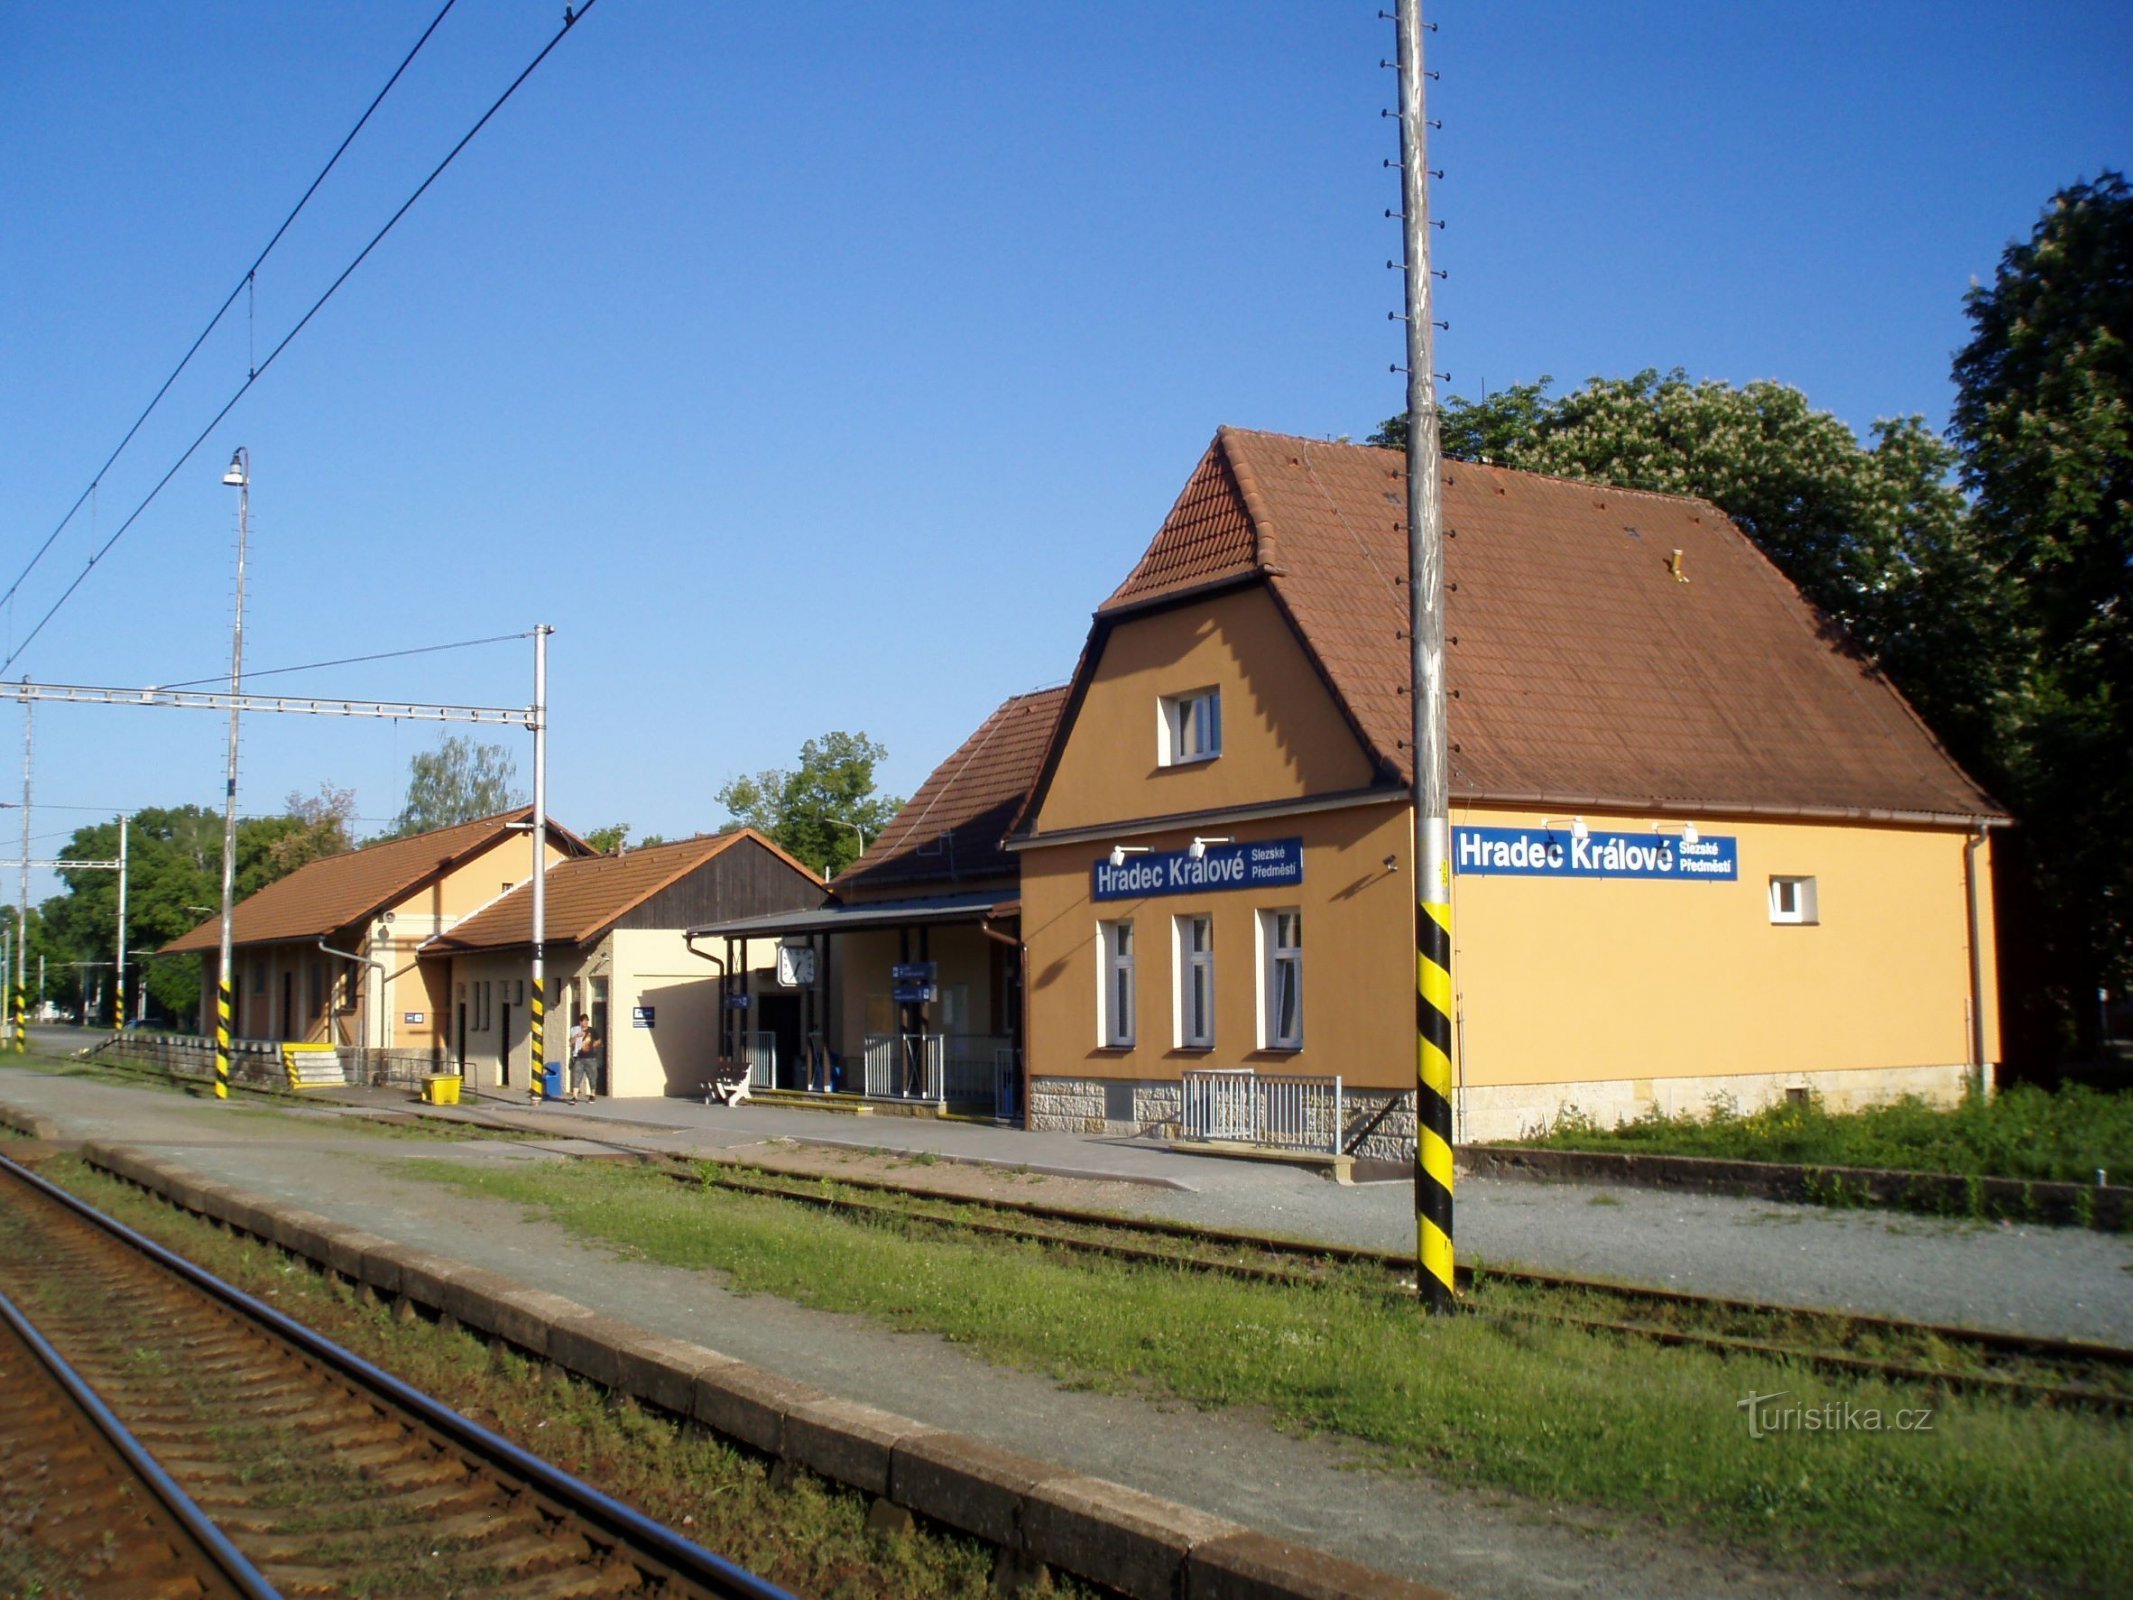 Bahnhof in schlesischen Vororten (Hradec Králové, 19.5.2012)